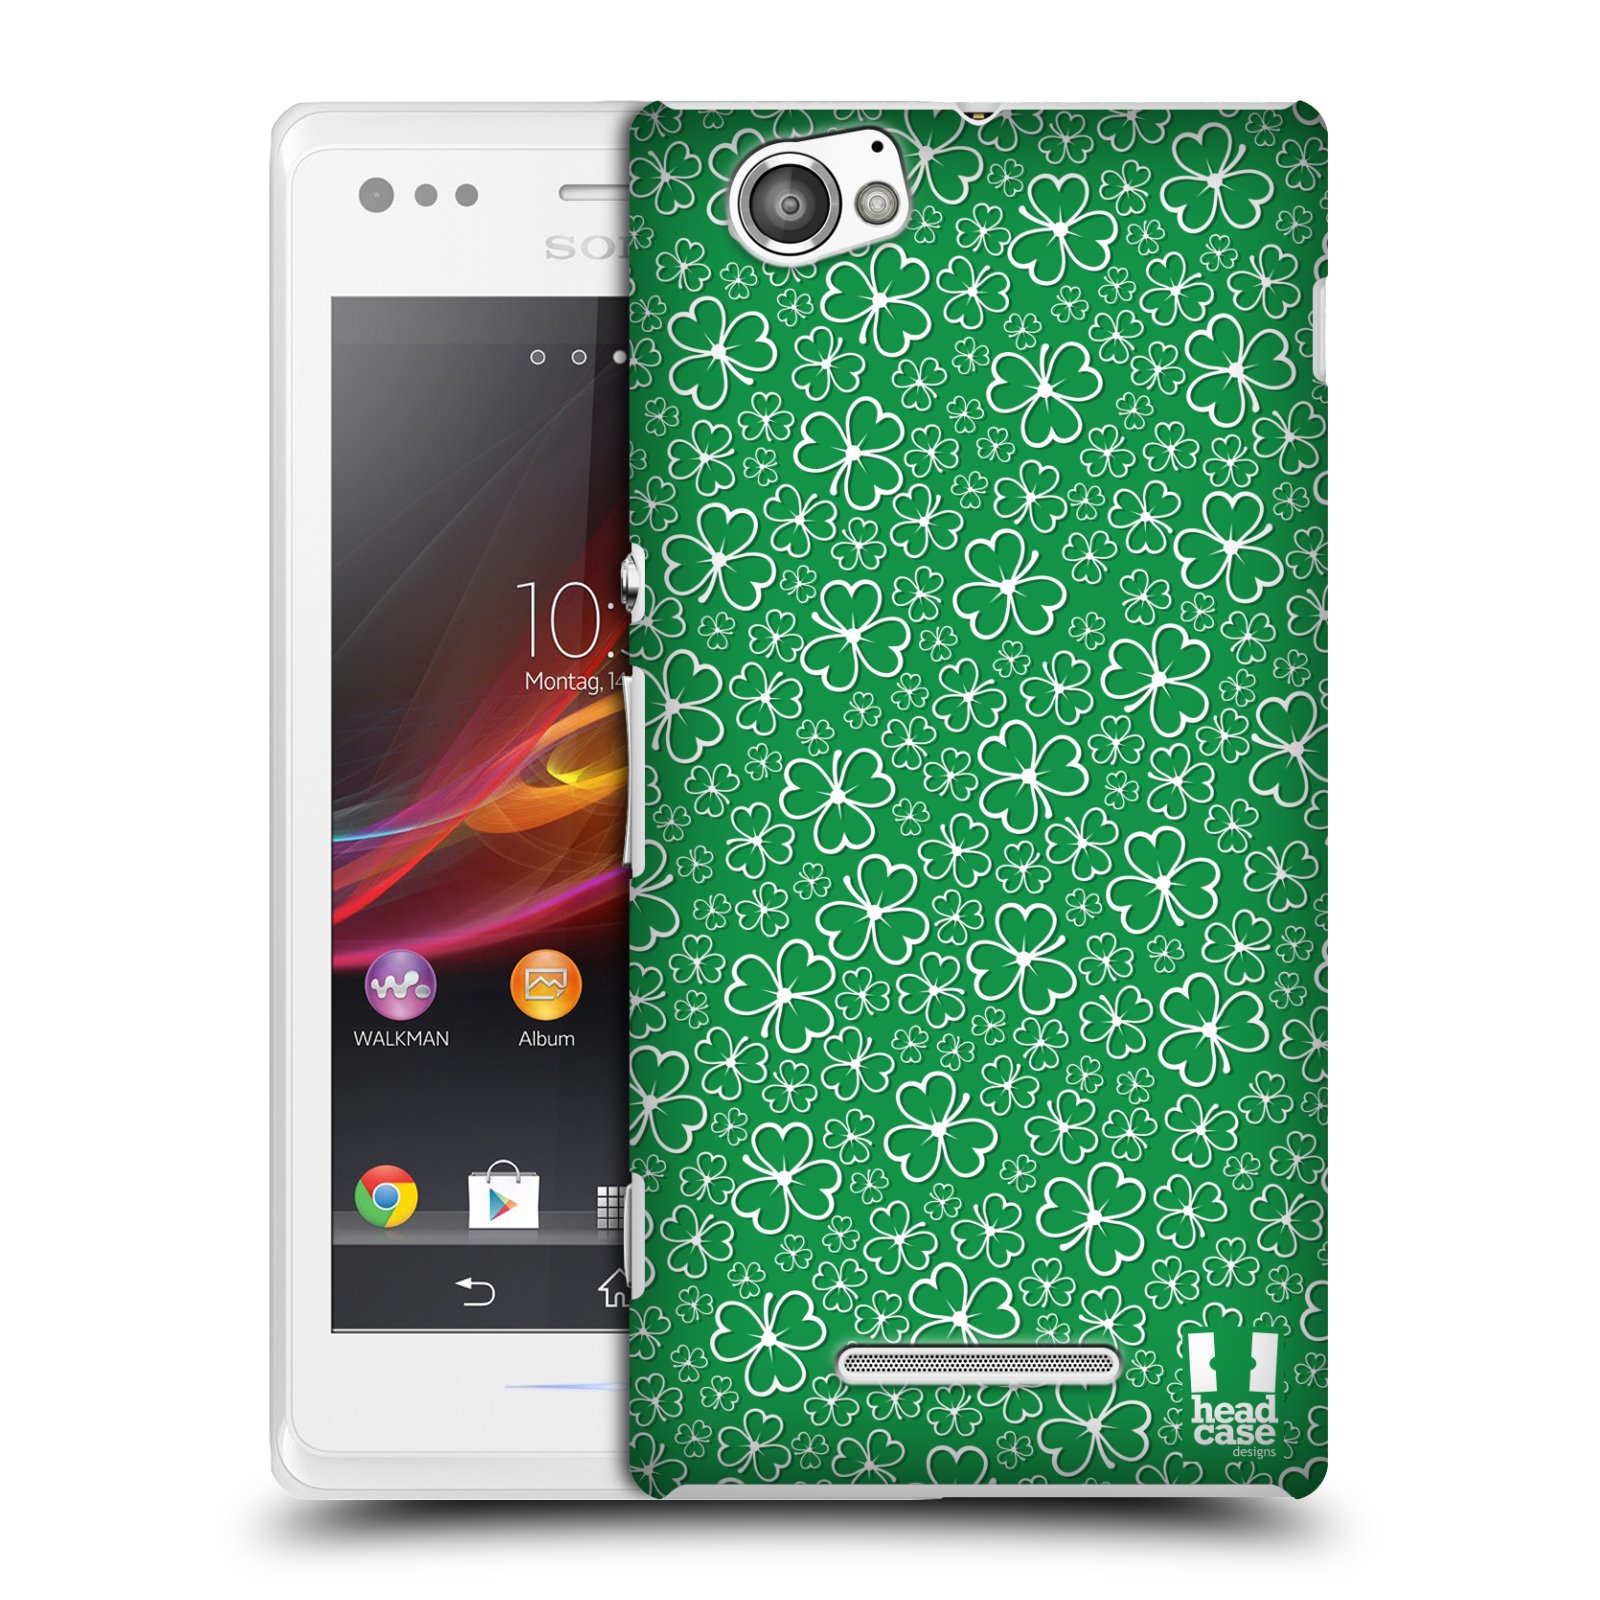 HEAD CASE plastový obal na mobil Sony Xperia M vzor Kreslený čyřlístek zelená HROMADA